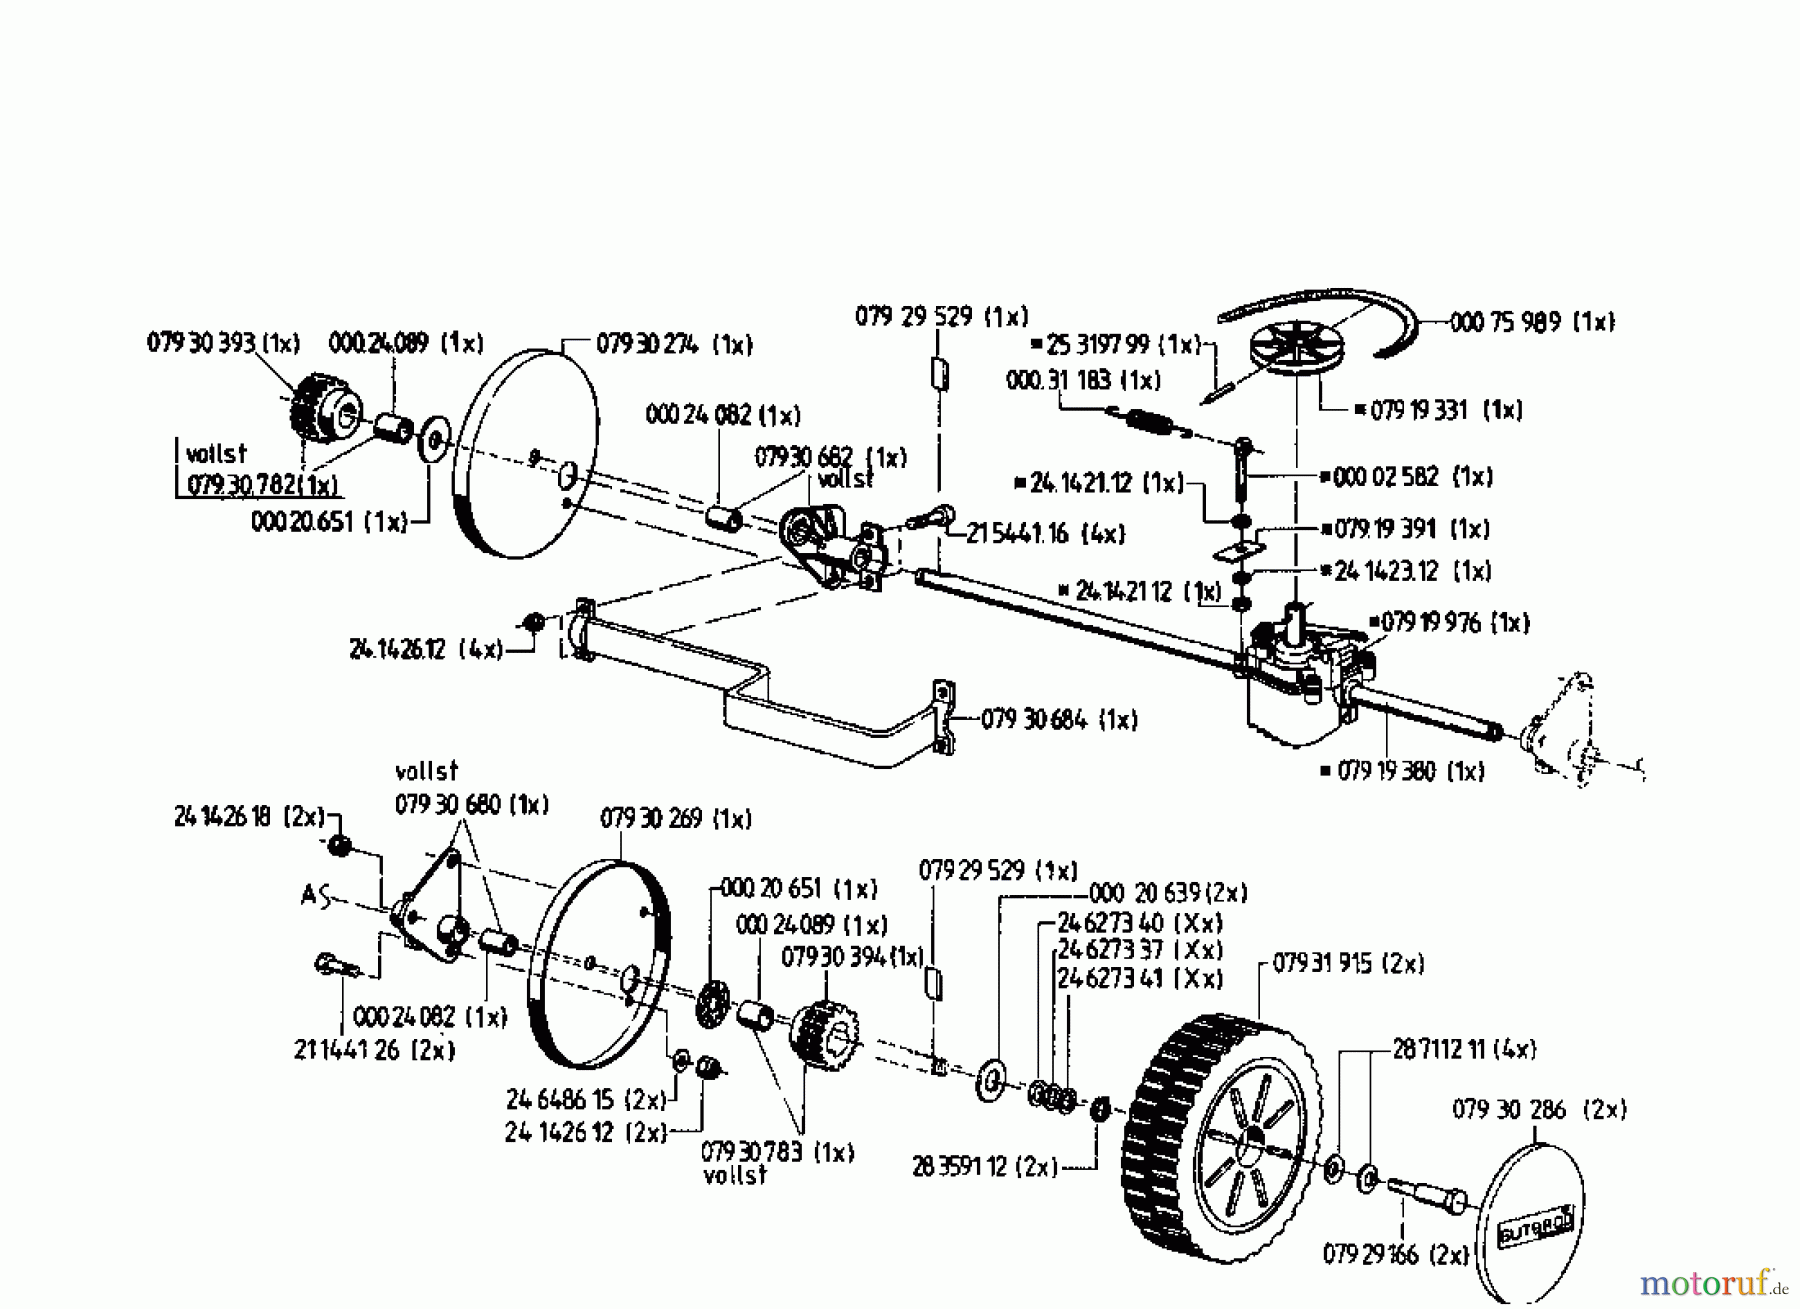  Gutbrod Motormäher mit Antrieb HB 48 RL 02815.04  (1996) Getriebe, Räder